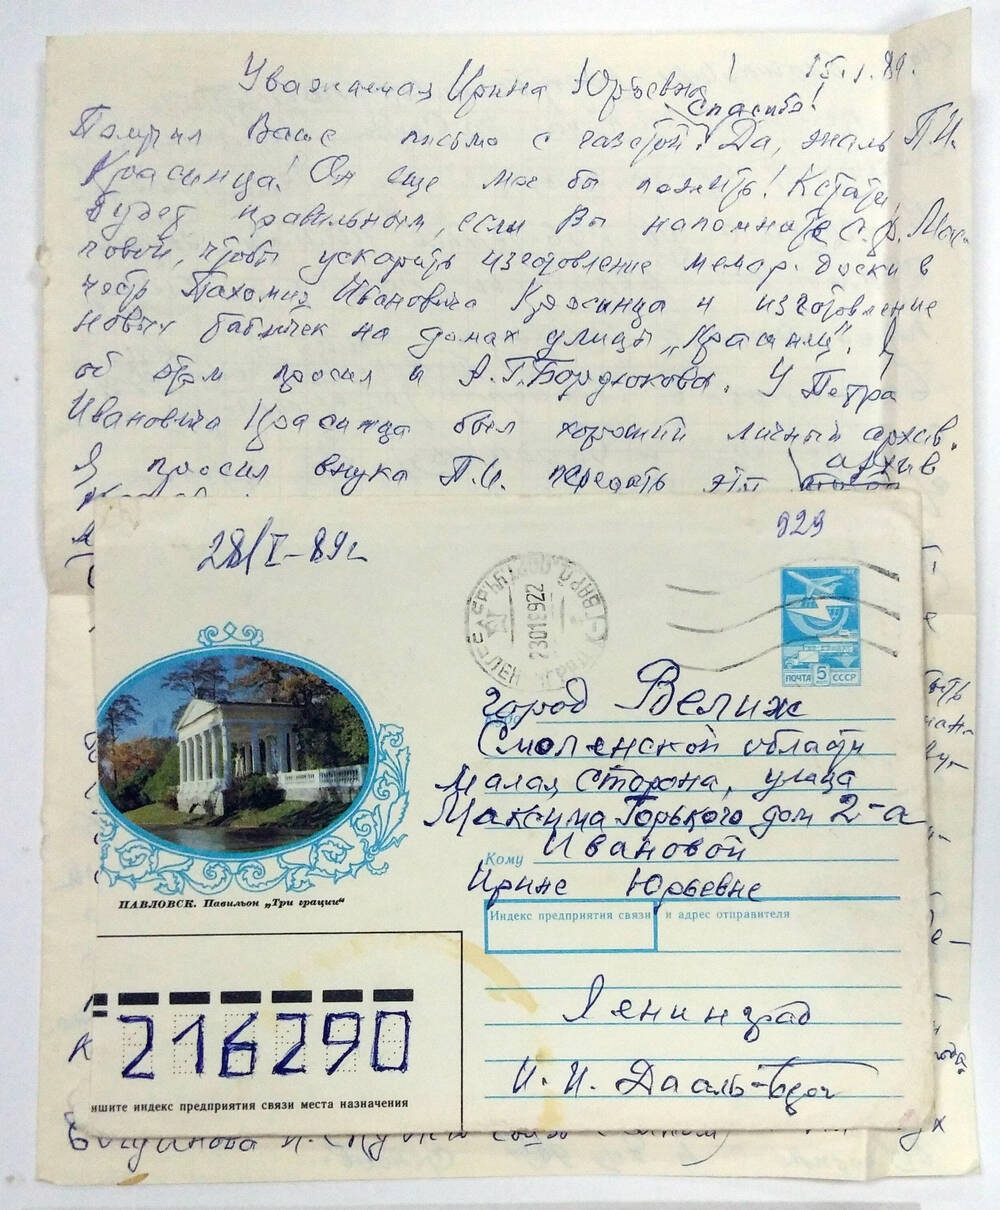 Письмо Ивановой ирине Юрьевны от Ивана Ивановича Дааль-Берга